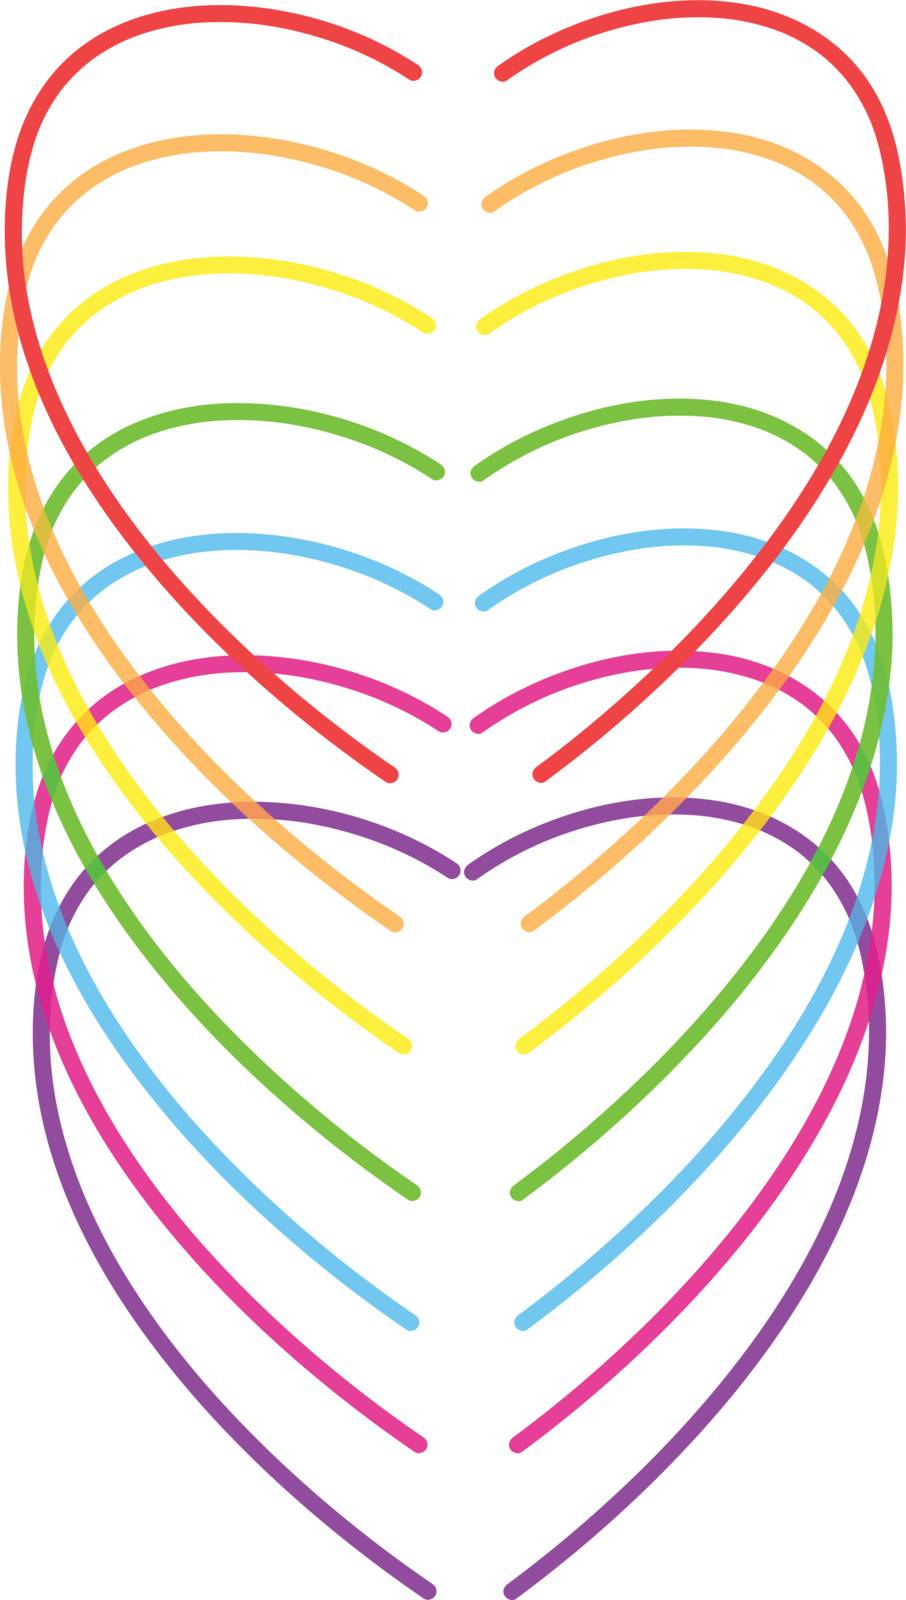 rainbow hearts vector illustration